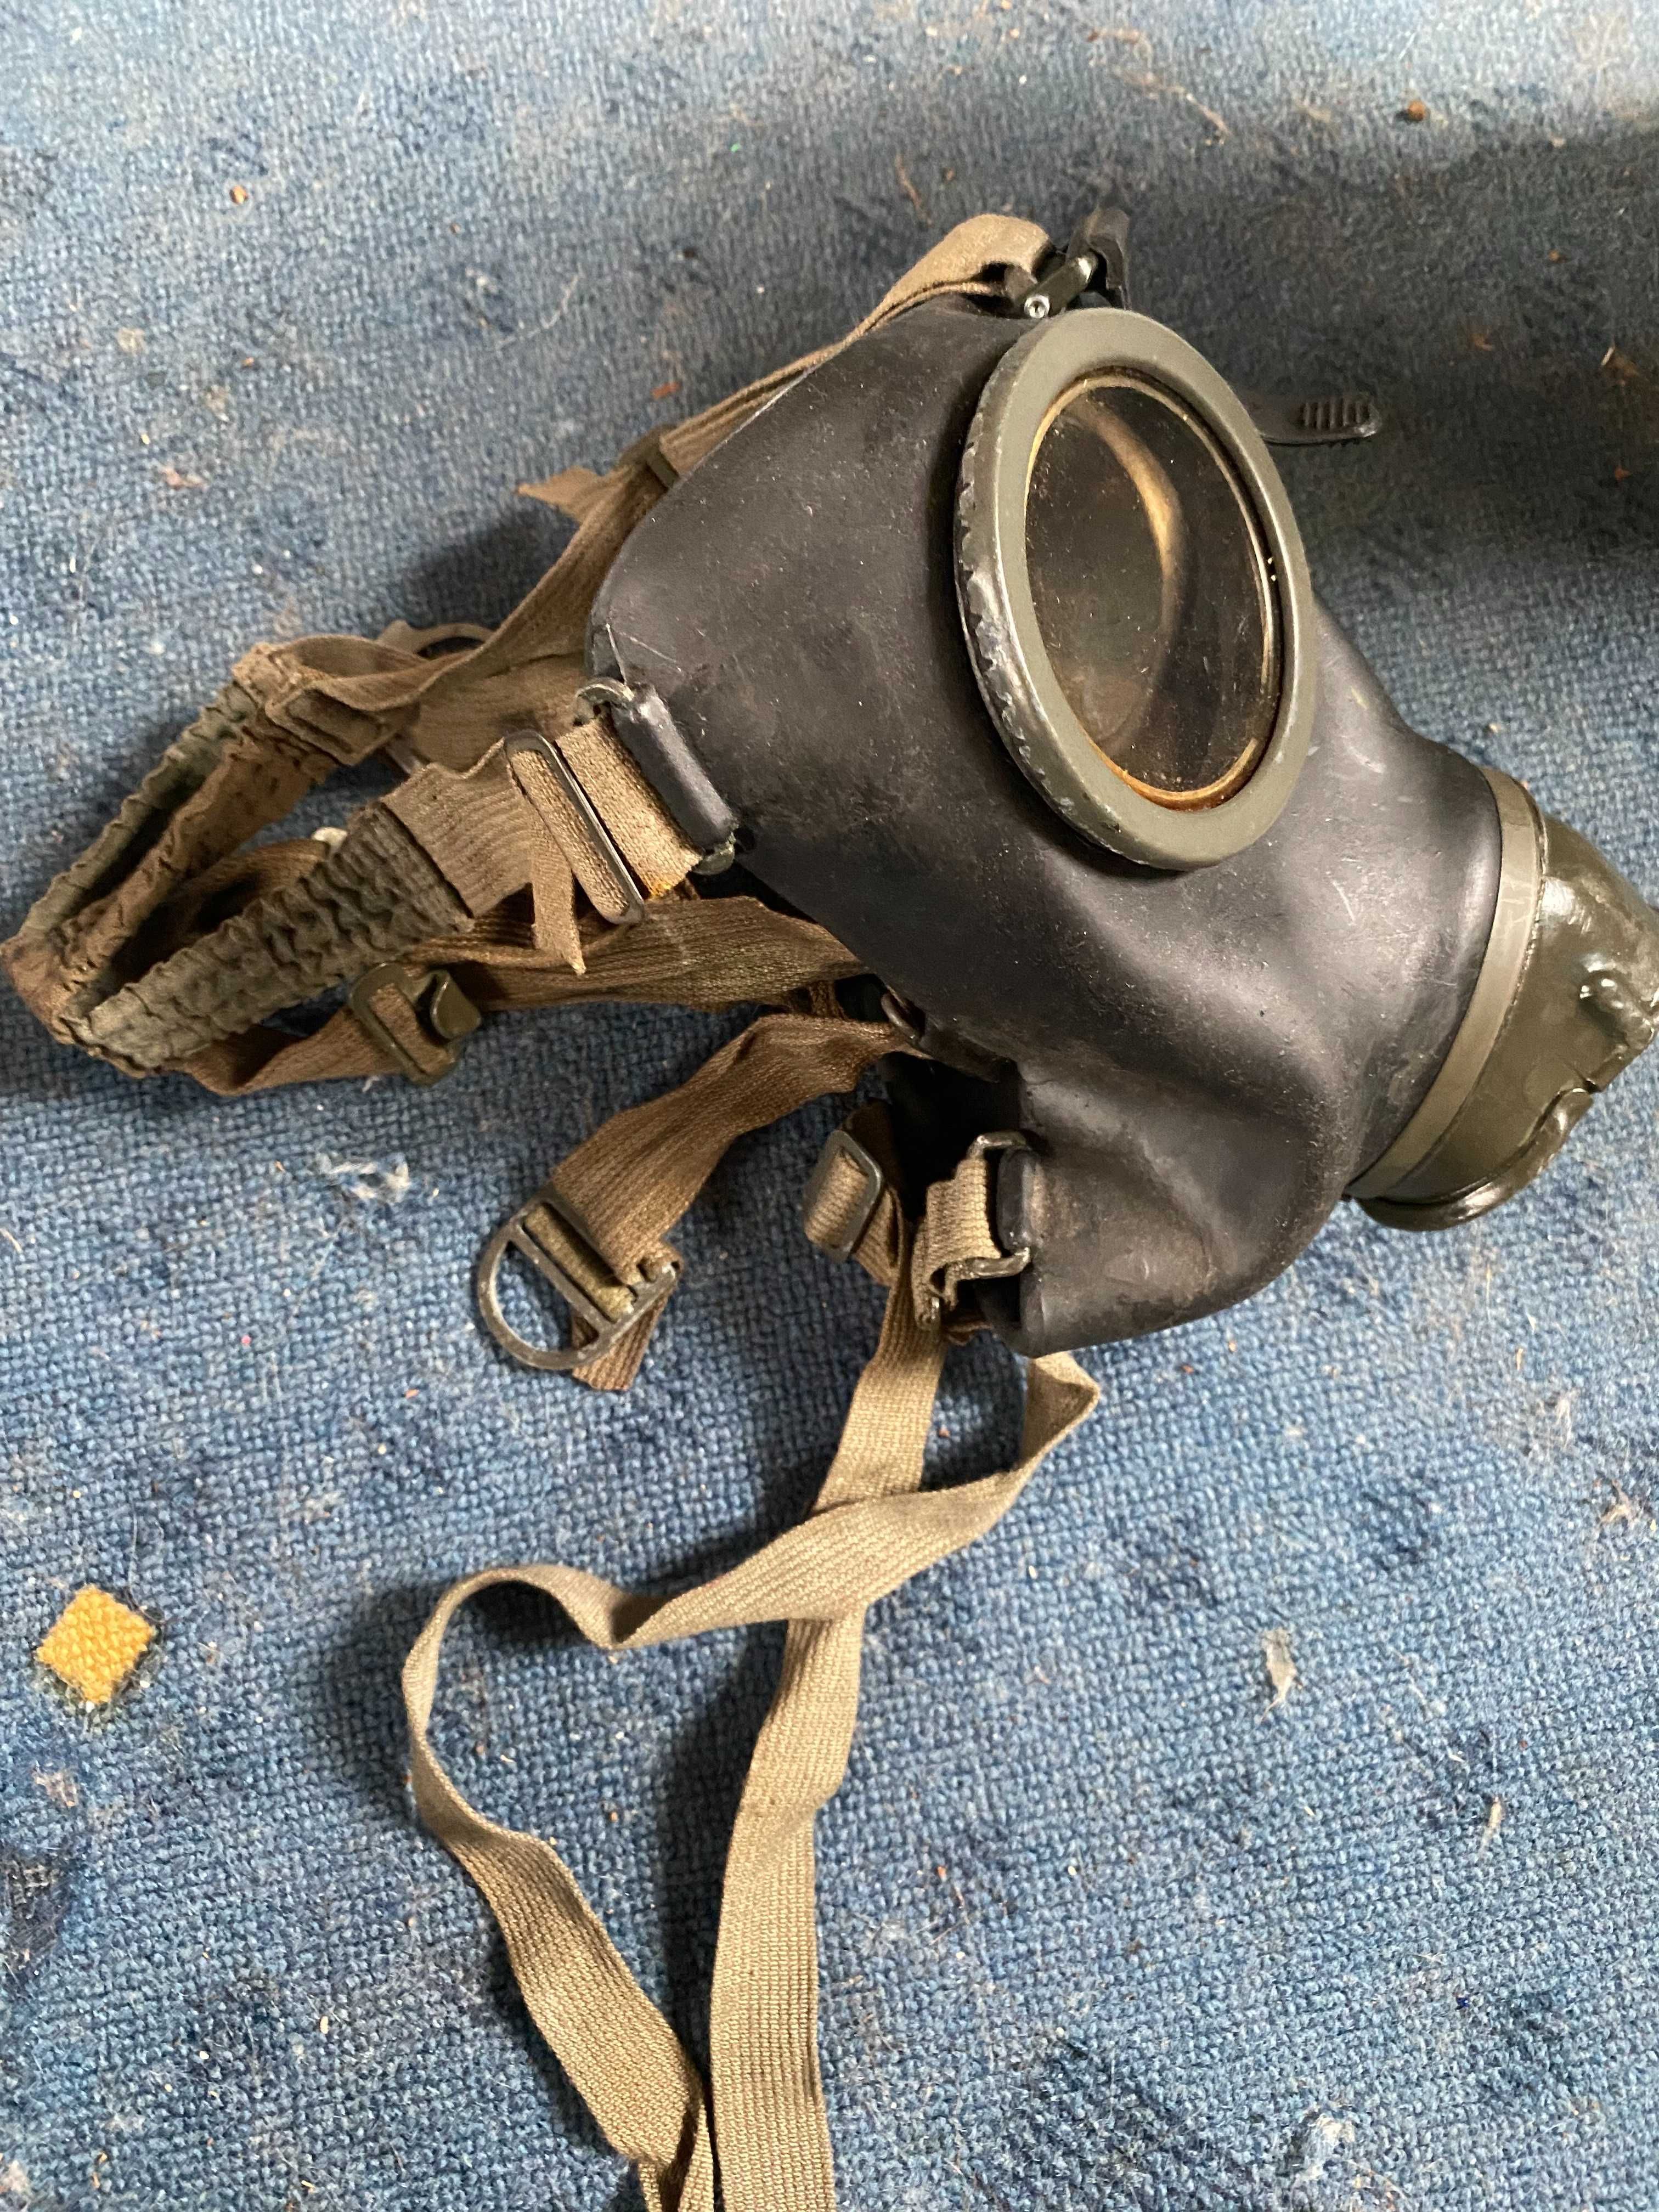 Maska przeciwgazowa Wehrmacht 38 wraz z filtrem FE 41 i puszką